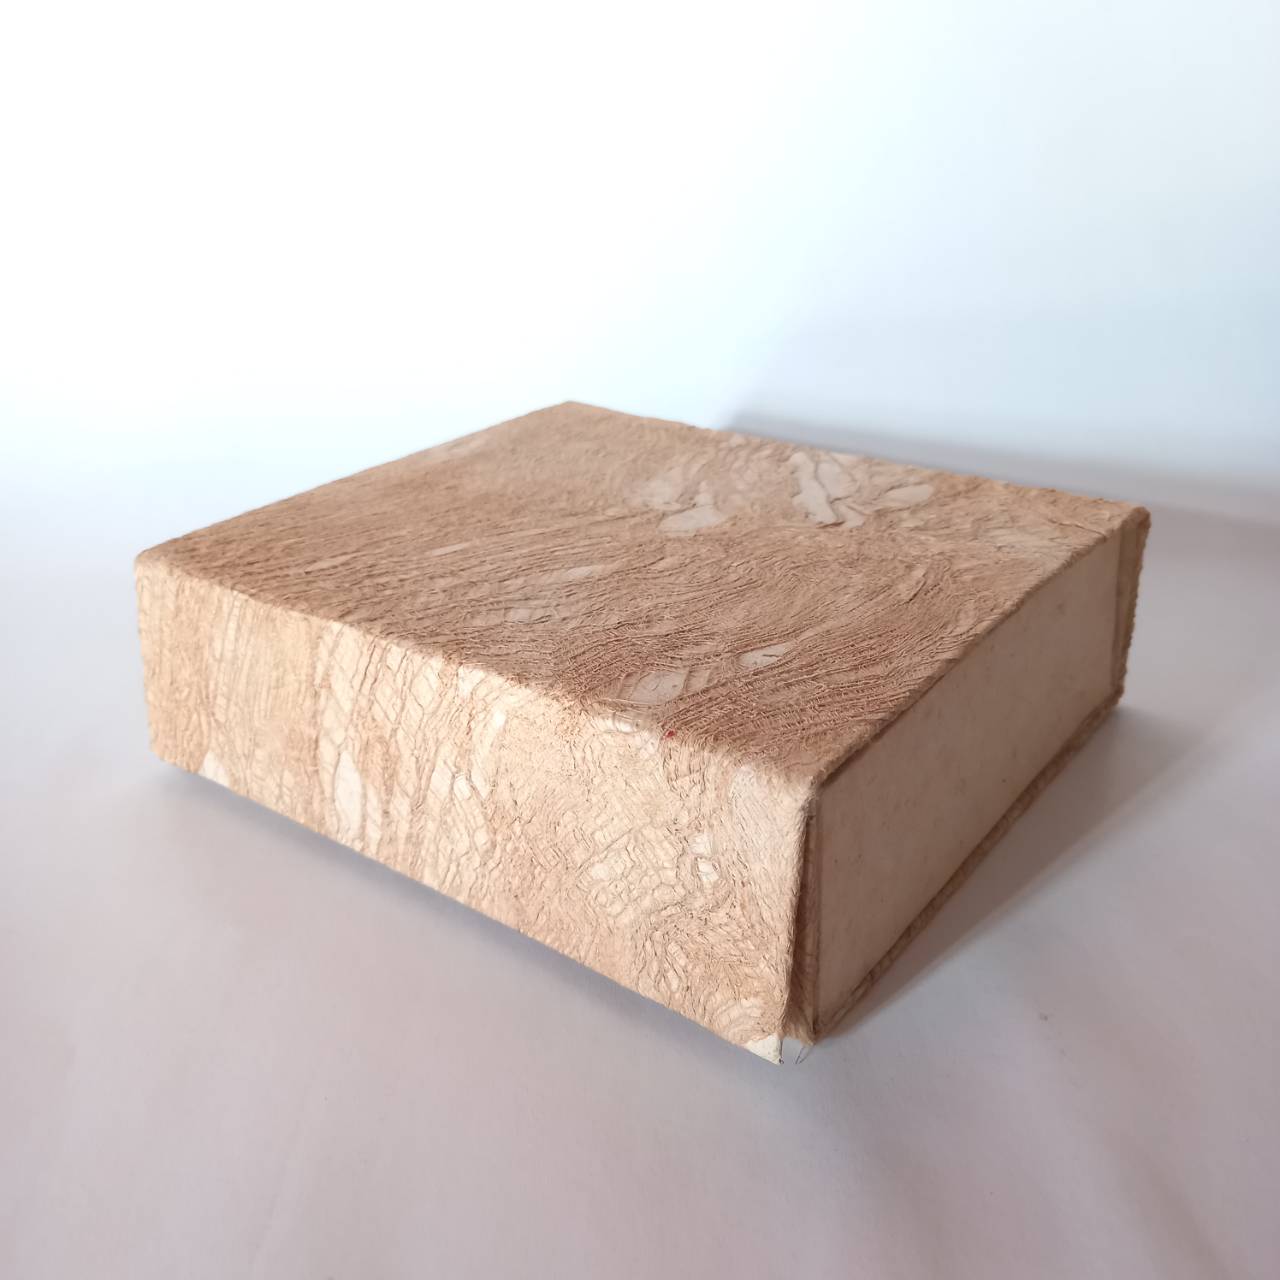 Mulberry paper box with bark fiber กล่องกระดาษสาแต่งเยื่อสาน้ำตาล